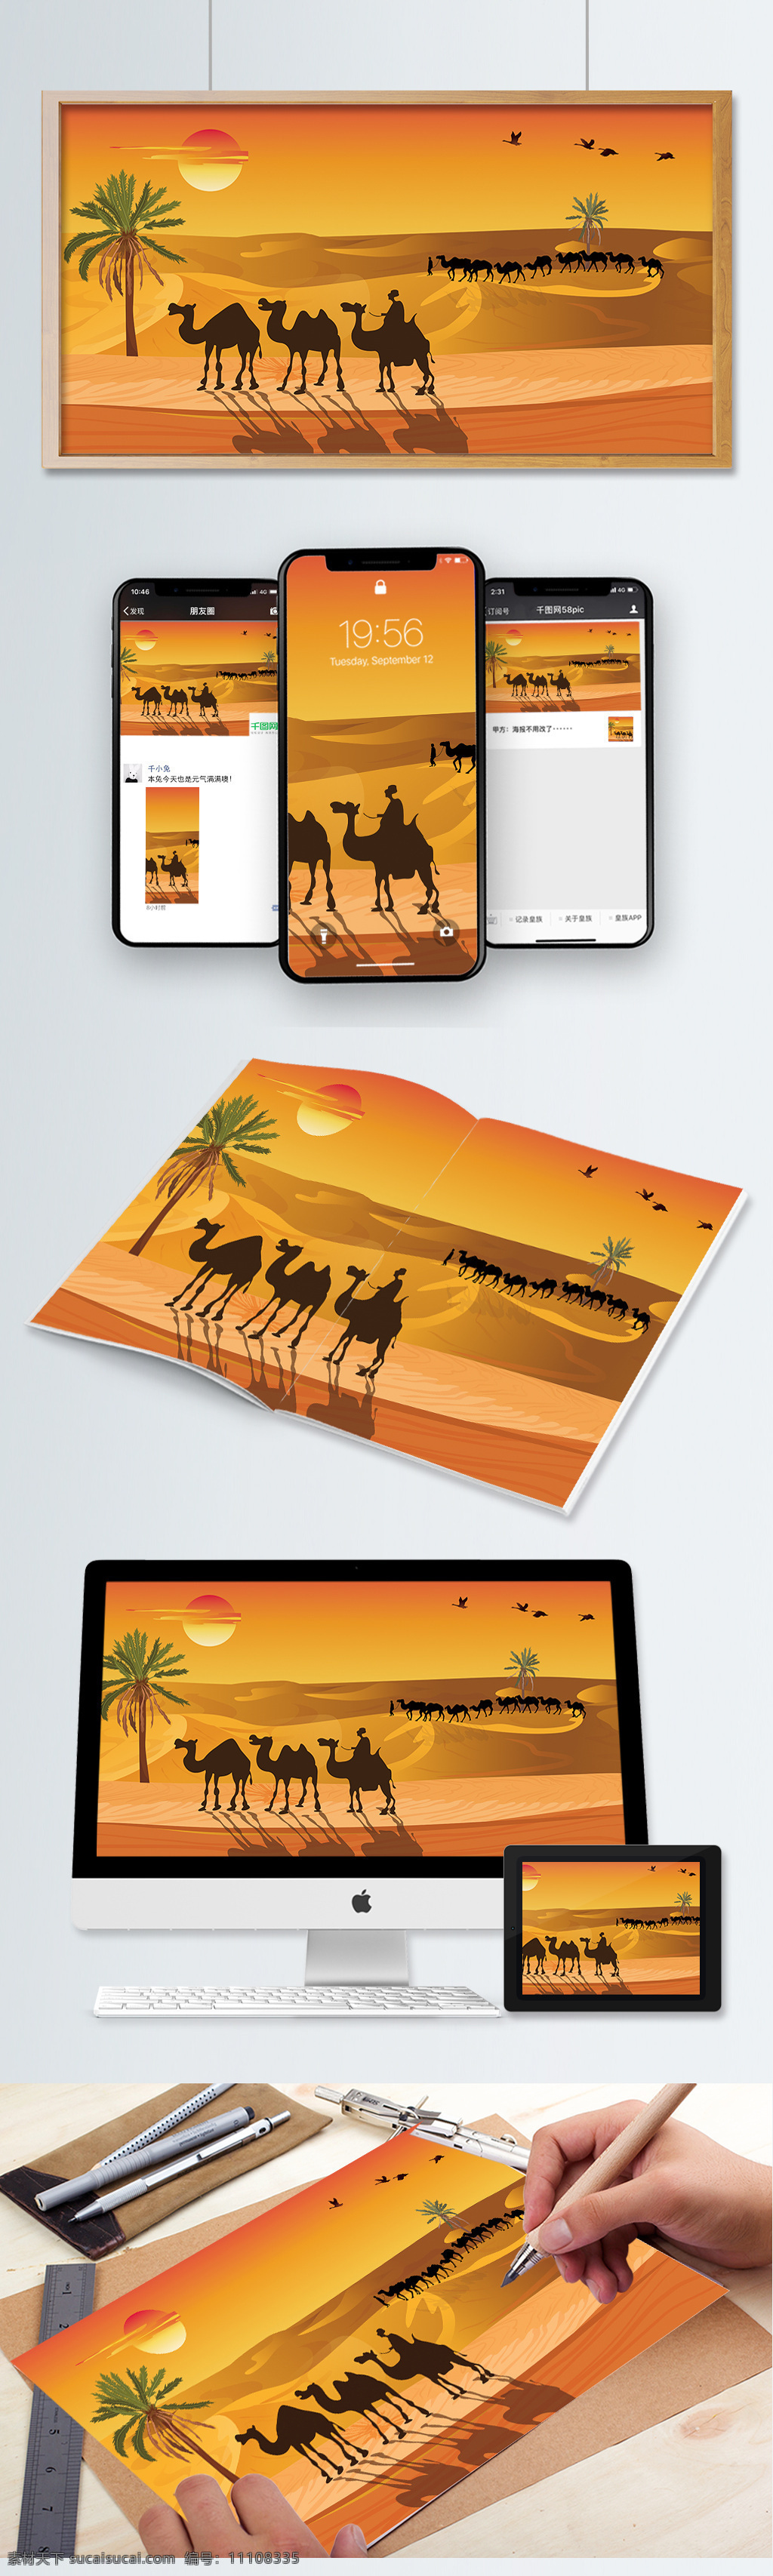 沙漠 旅游 金色夕阳 骆驼 队伍 椰子树 夕阳 大雁 太阳 黄色背景 沙丘 驼队 旅游插画 卡通旅游